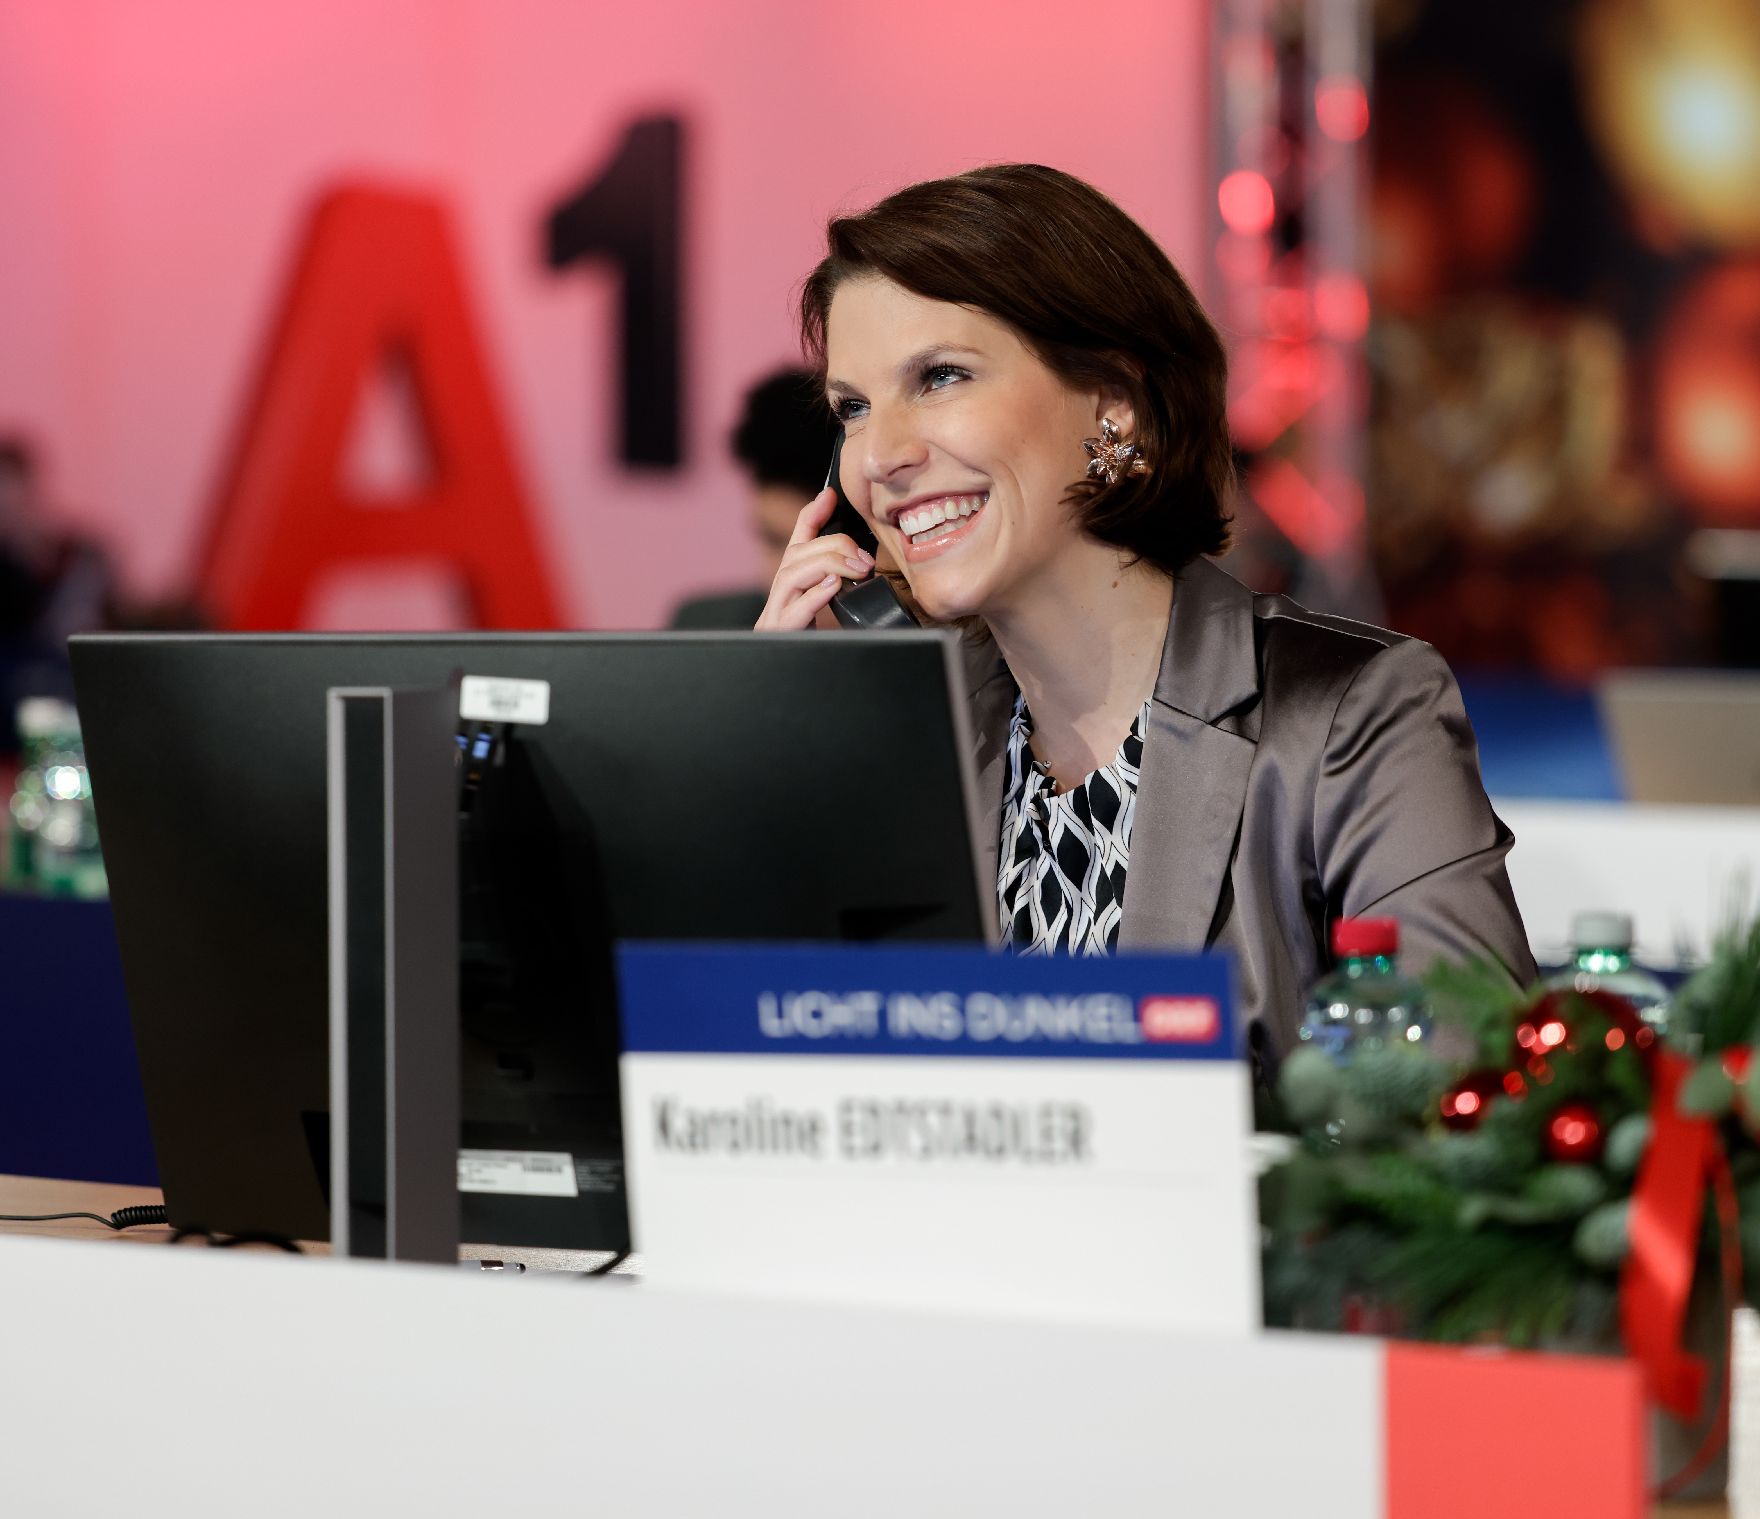 Am 24. Dezember 2020 nahm Bundesministerin Karoline Edtstadler an der Licht ins Dunkel Spendenaktion im ORF Zentrum Wien teil.